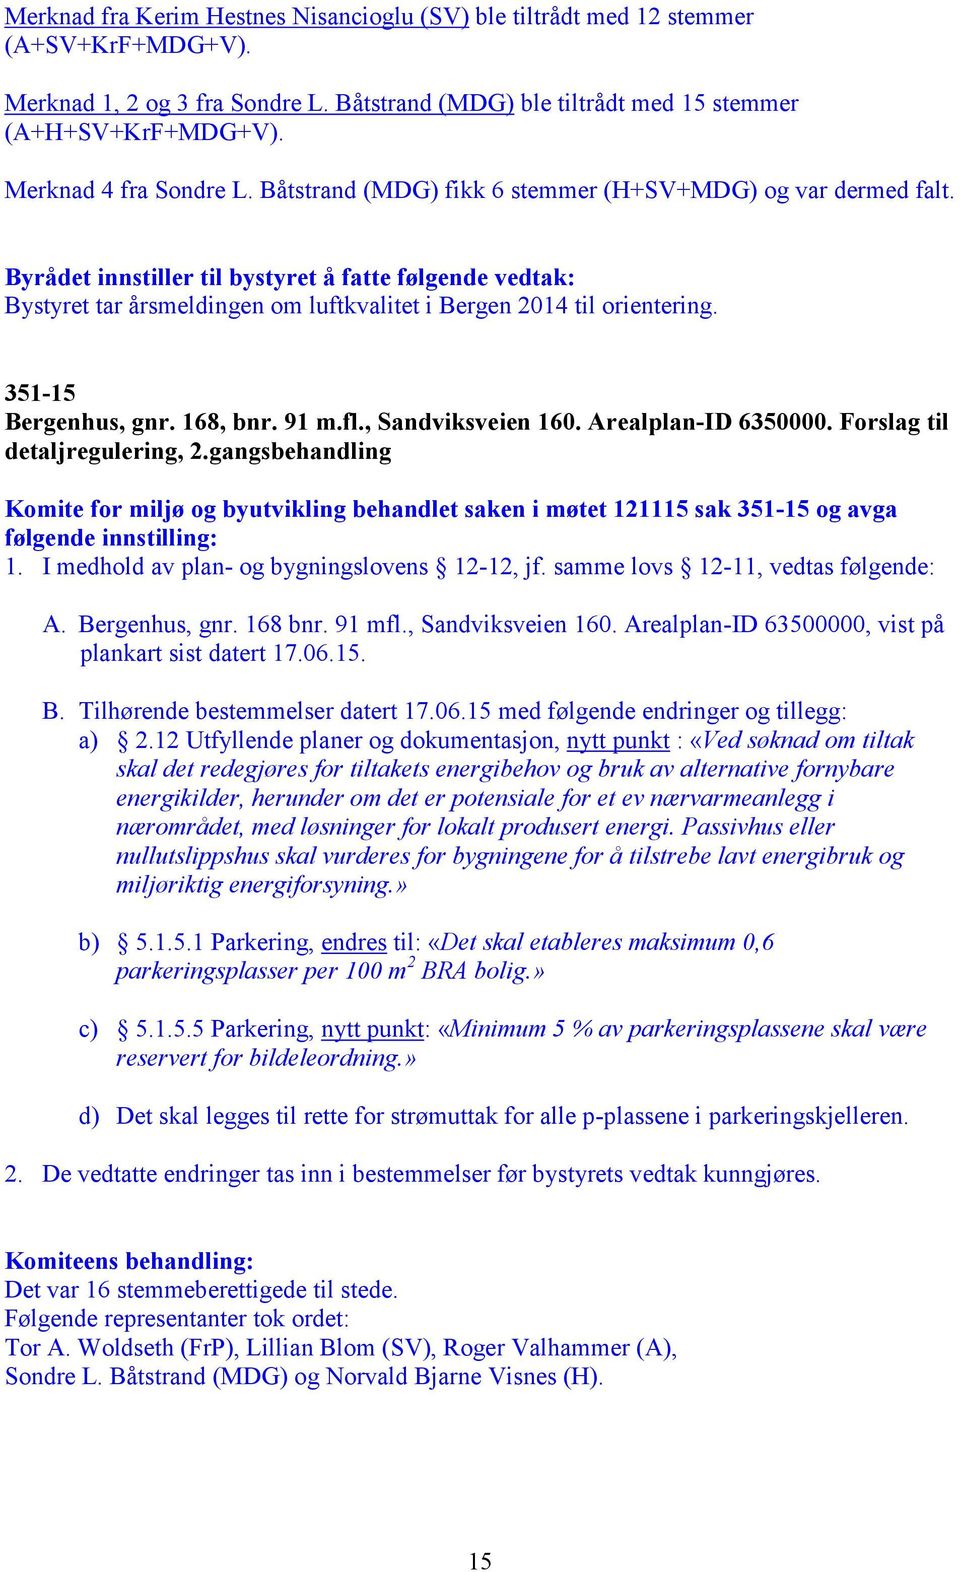 351-15 Bergenhus, gnr. 168, bnr. 91 m.fl., Sandviksveien 160. Arealplan-ID 6350000. Forslag til detaljregulering, 2.